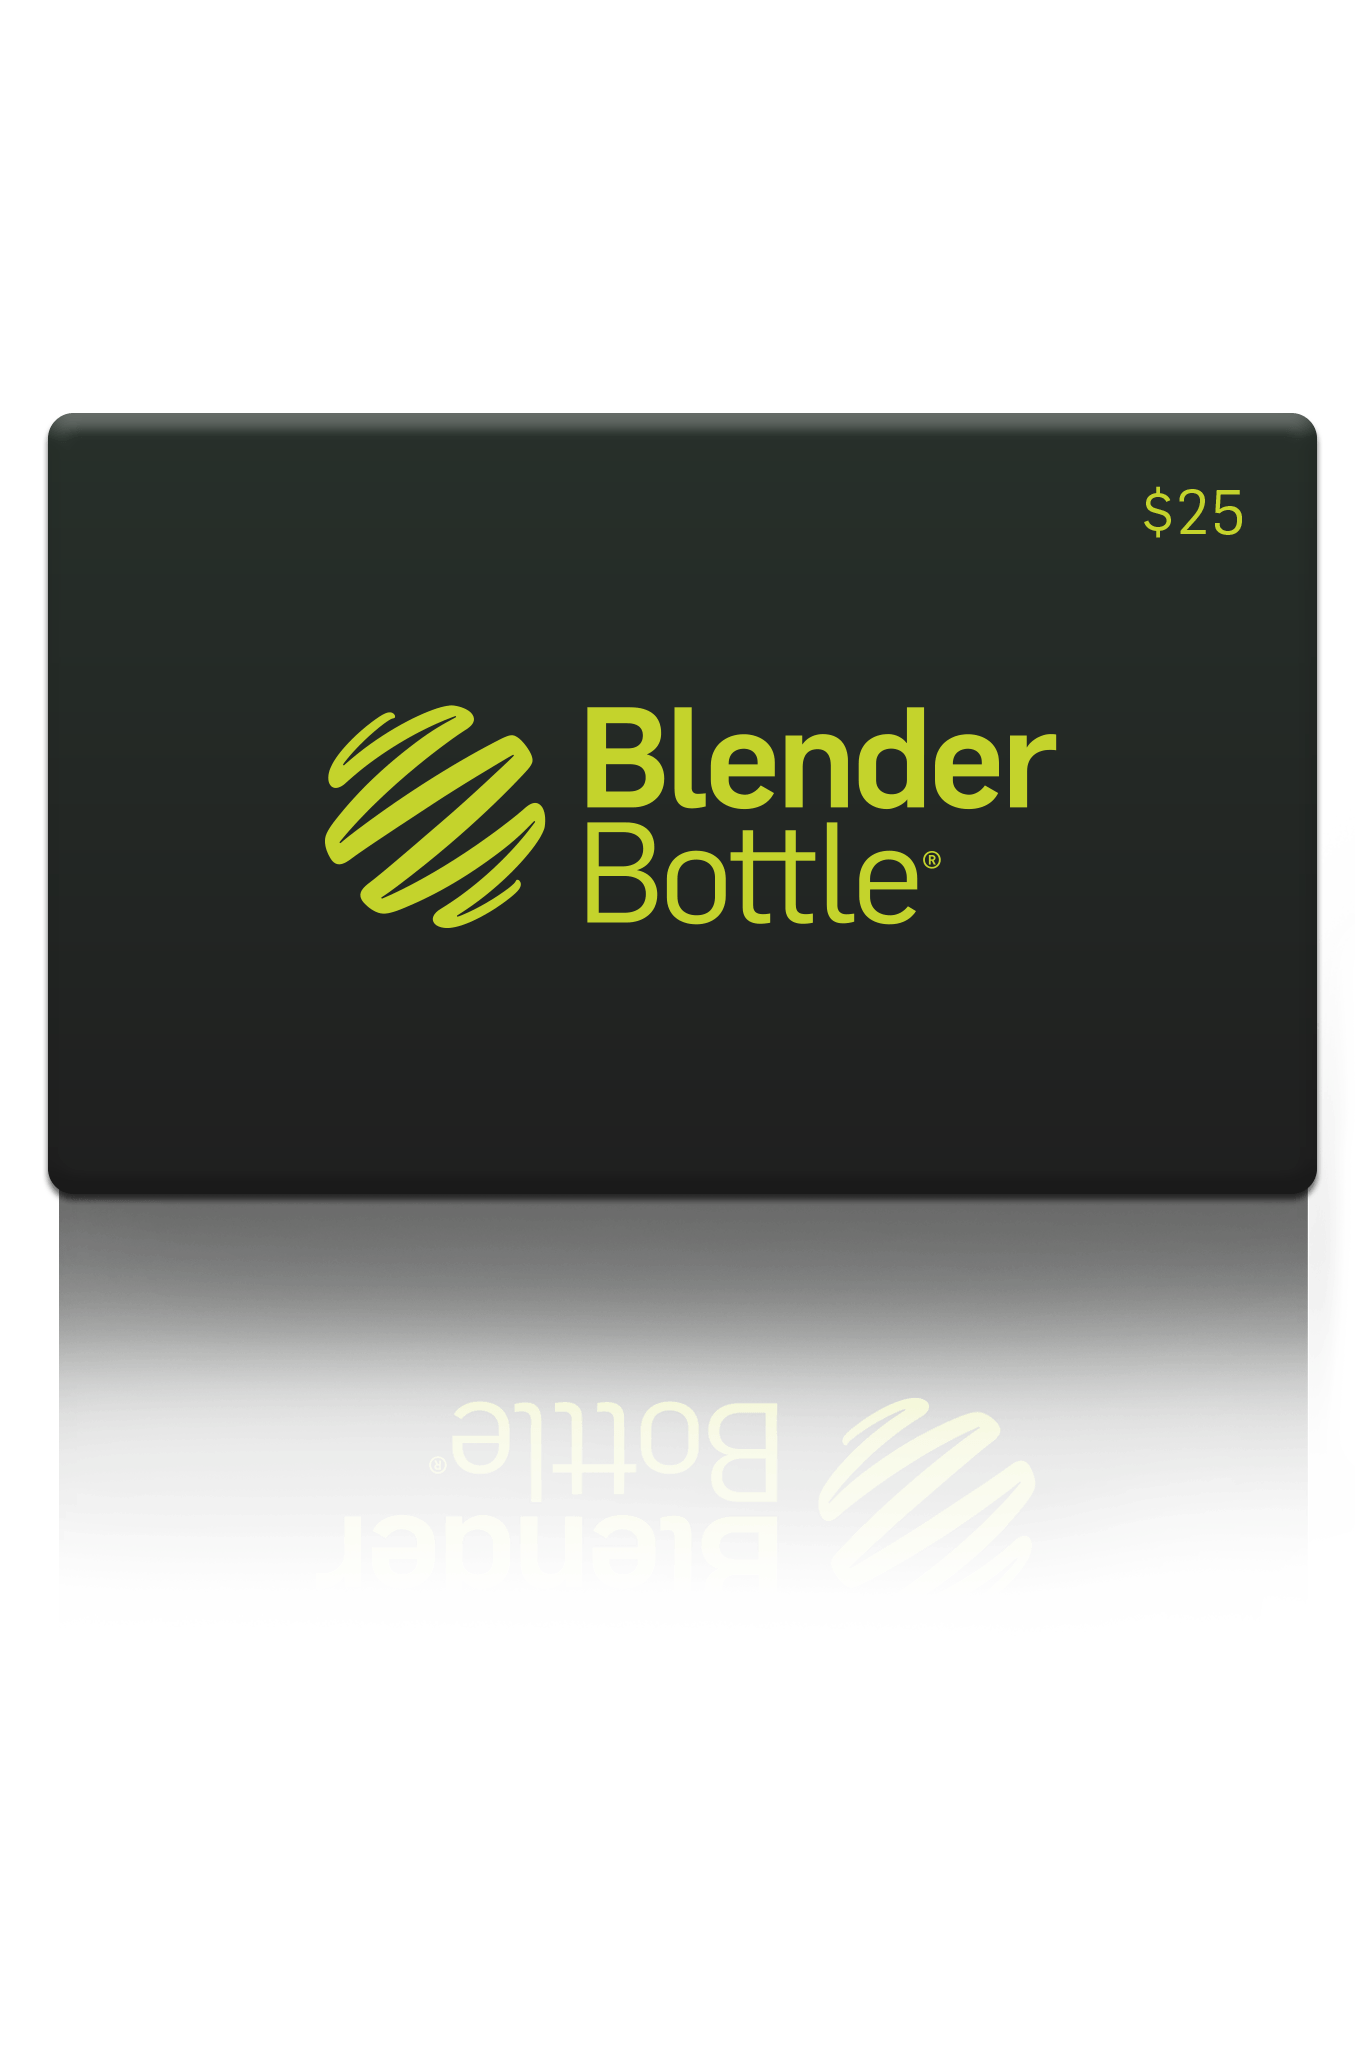 BlenderBottle - BlenderBottle Gift Card - $25.00